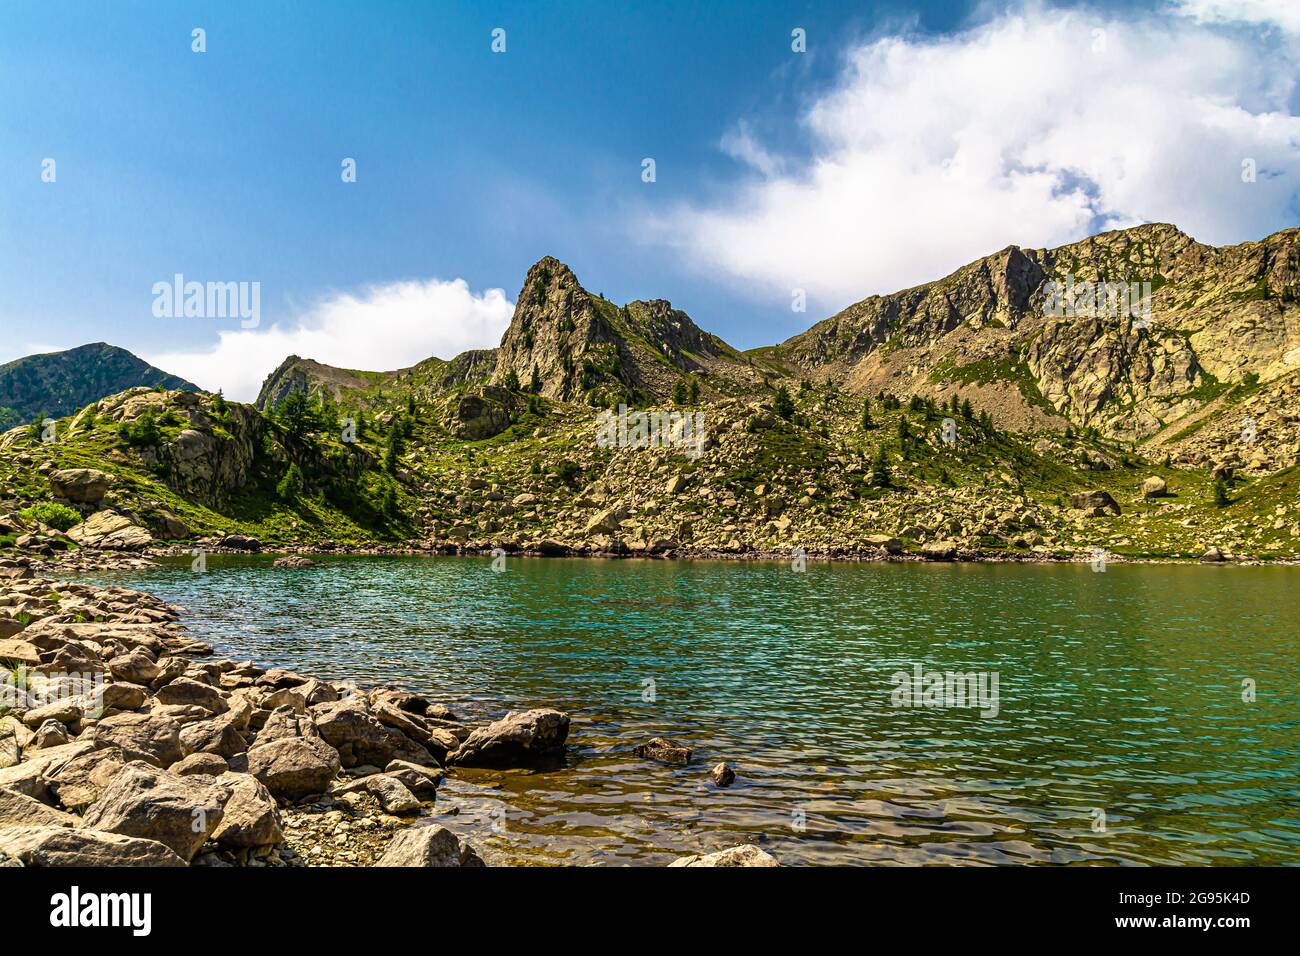 Die Seen der Alpen von Cuneo sind Perlen, die am Fuße der schönsten Berge des Piemont in Norditalien liegen Stockfoto